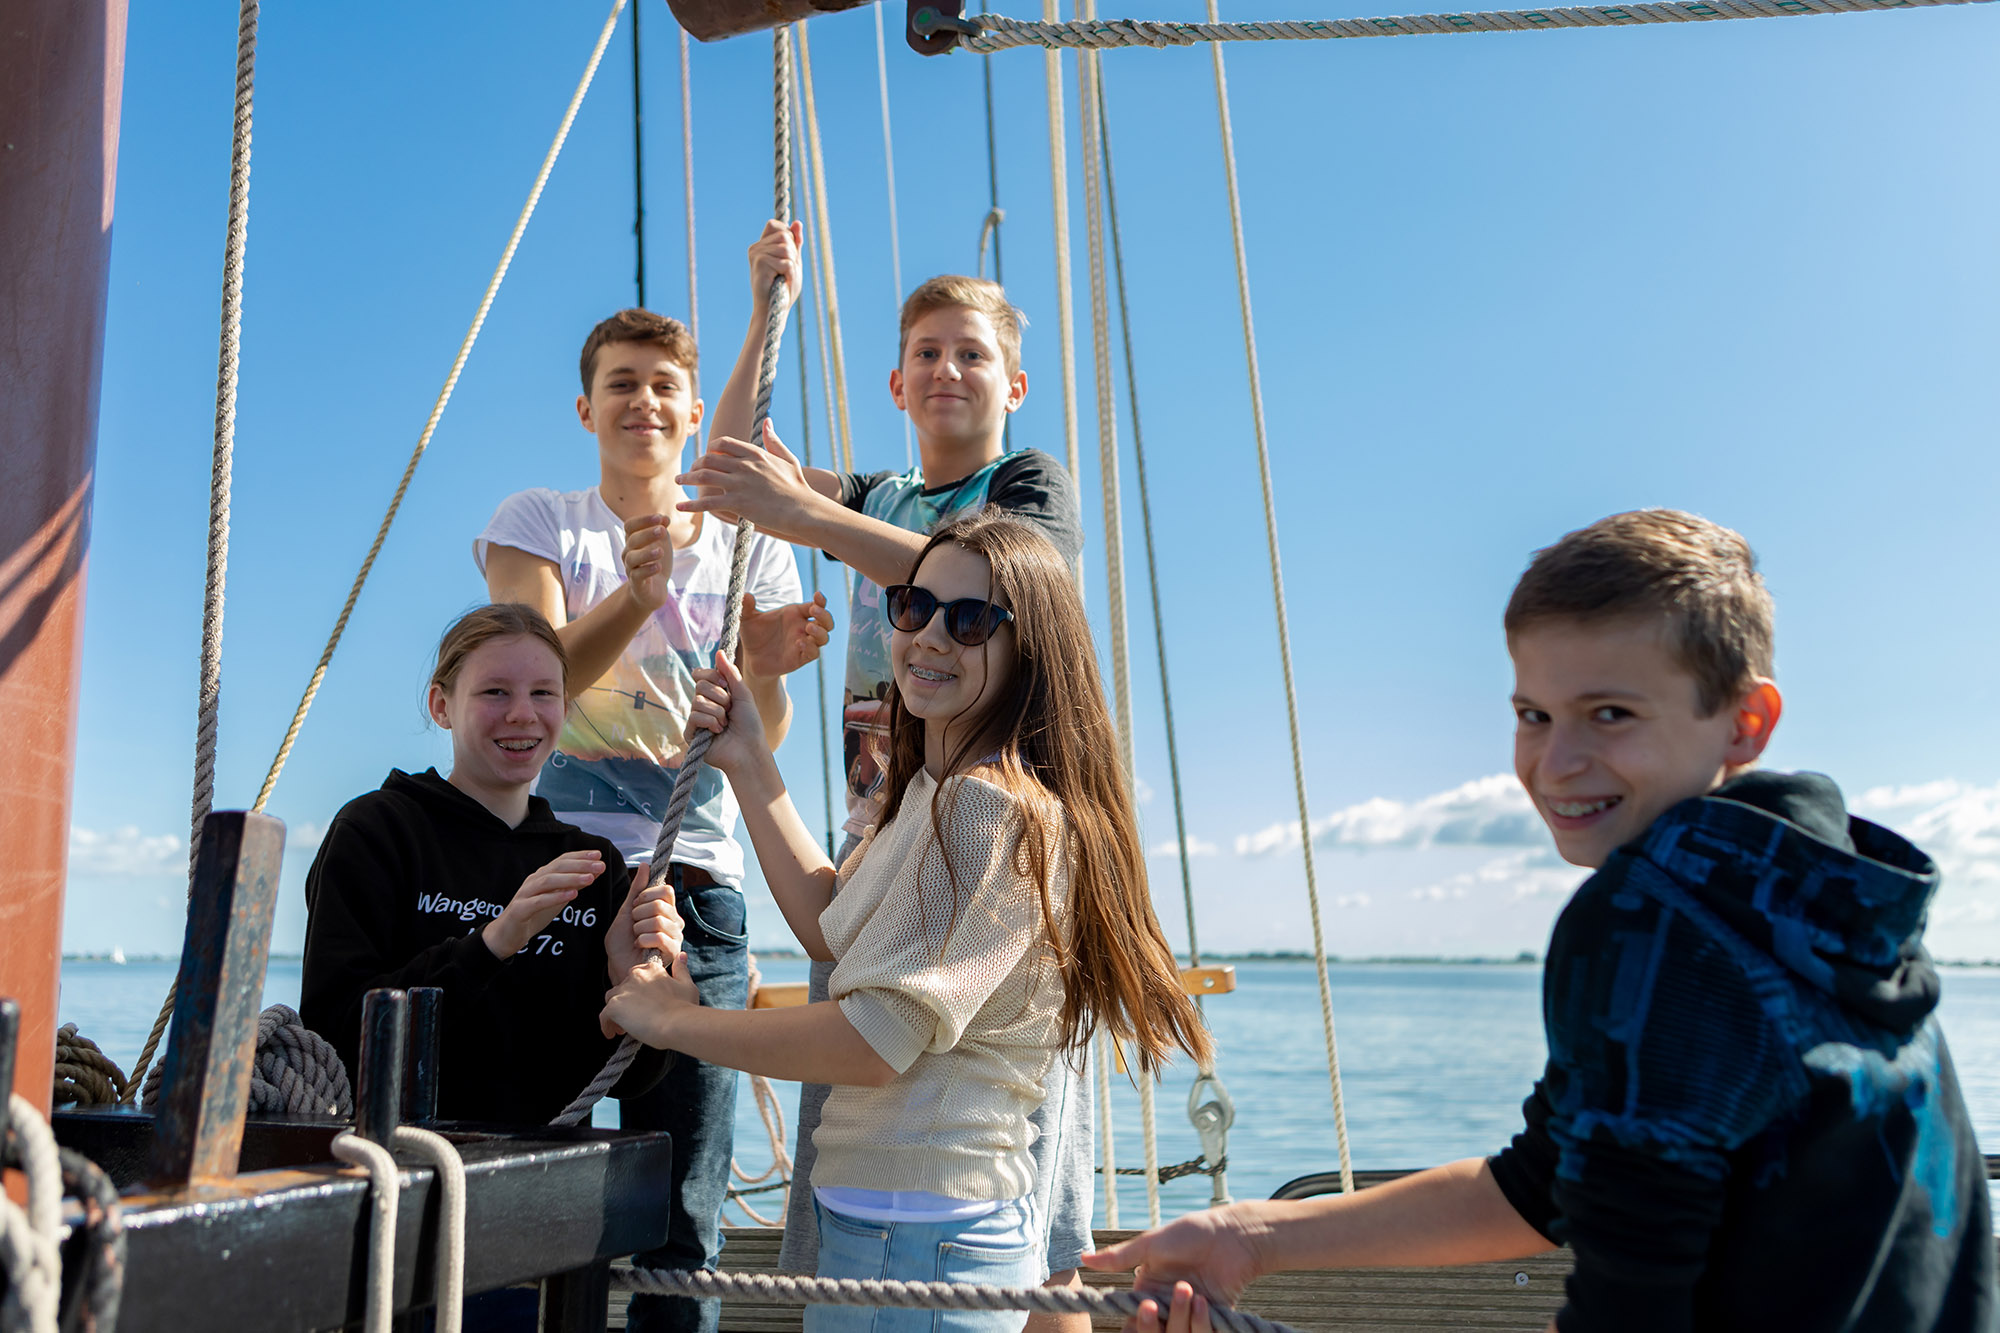 Schüler während des Segelsetzens auf einem Segelschiff